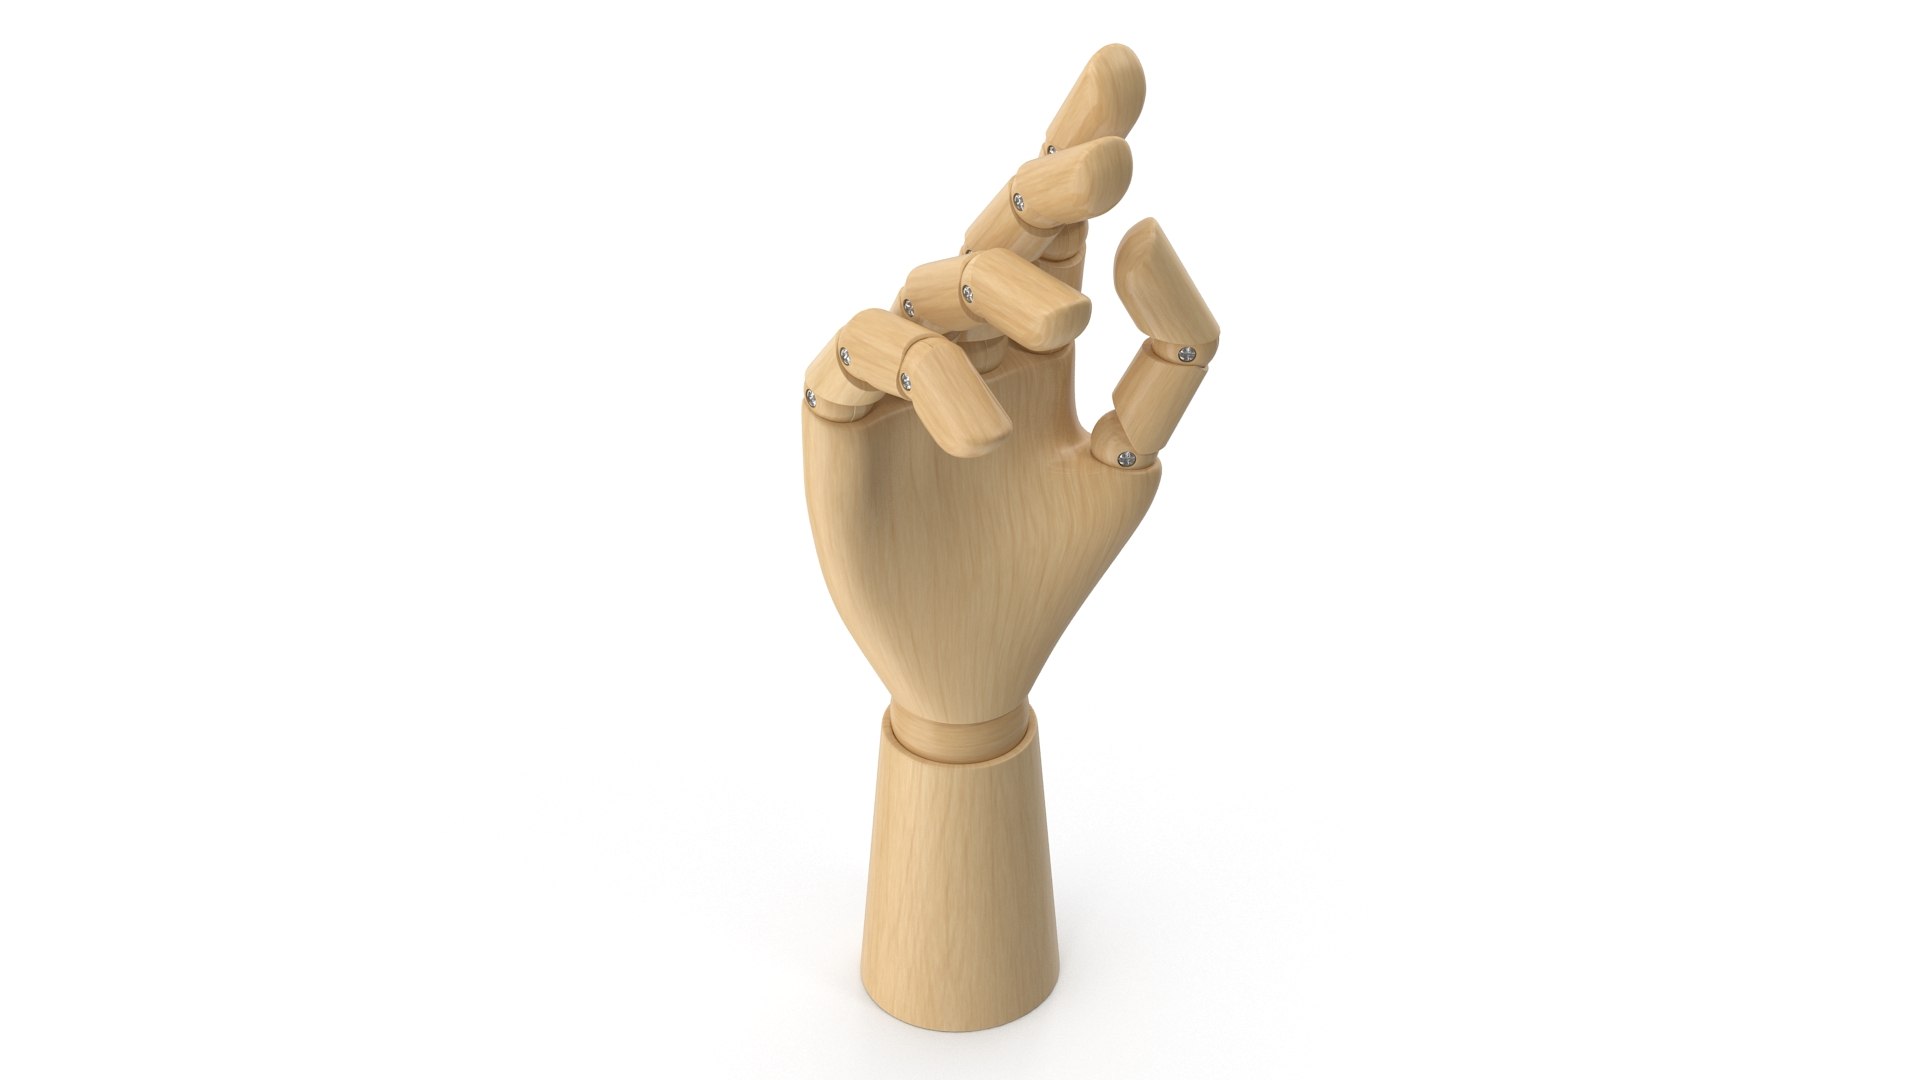 3D model wooden hand - TurboSquid 1657081